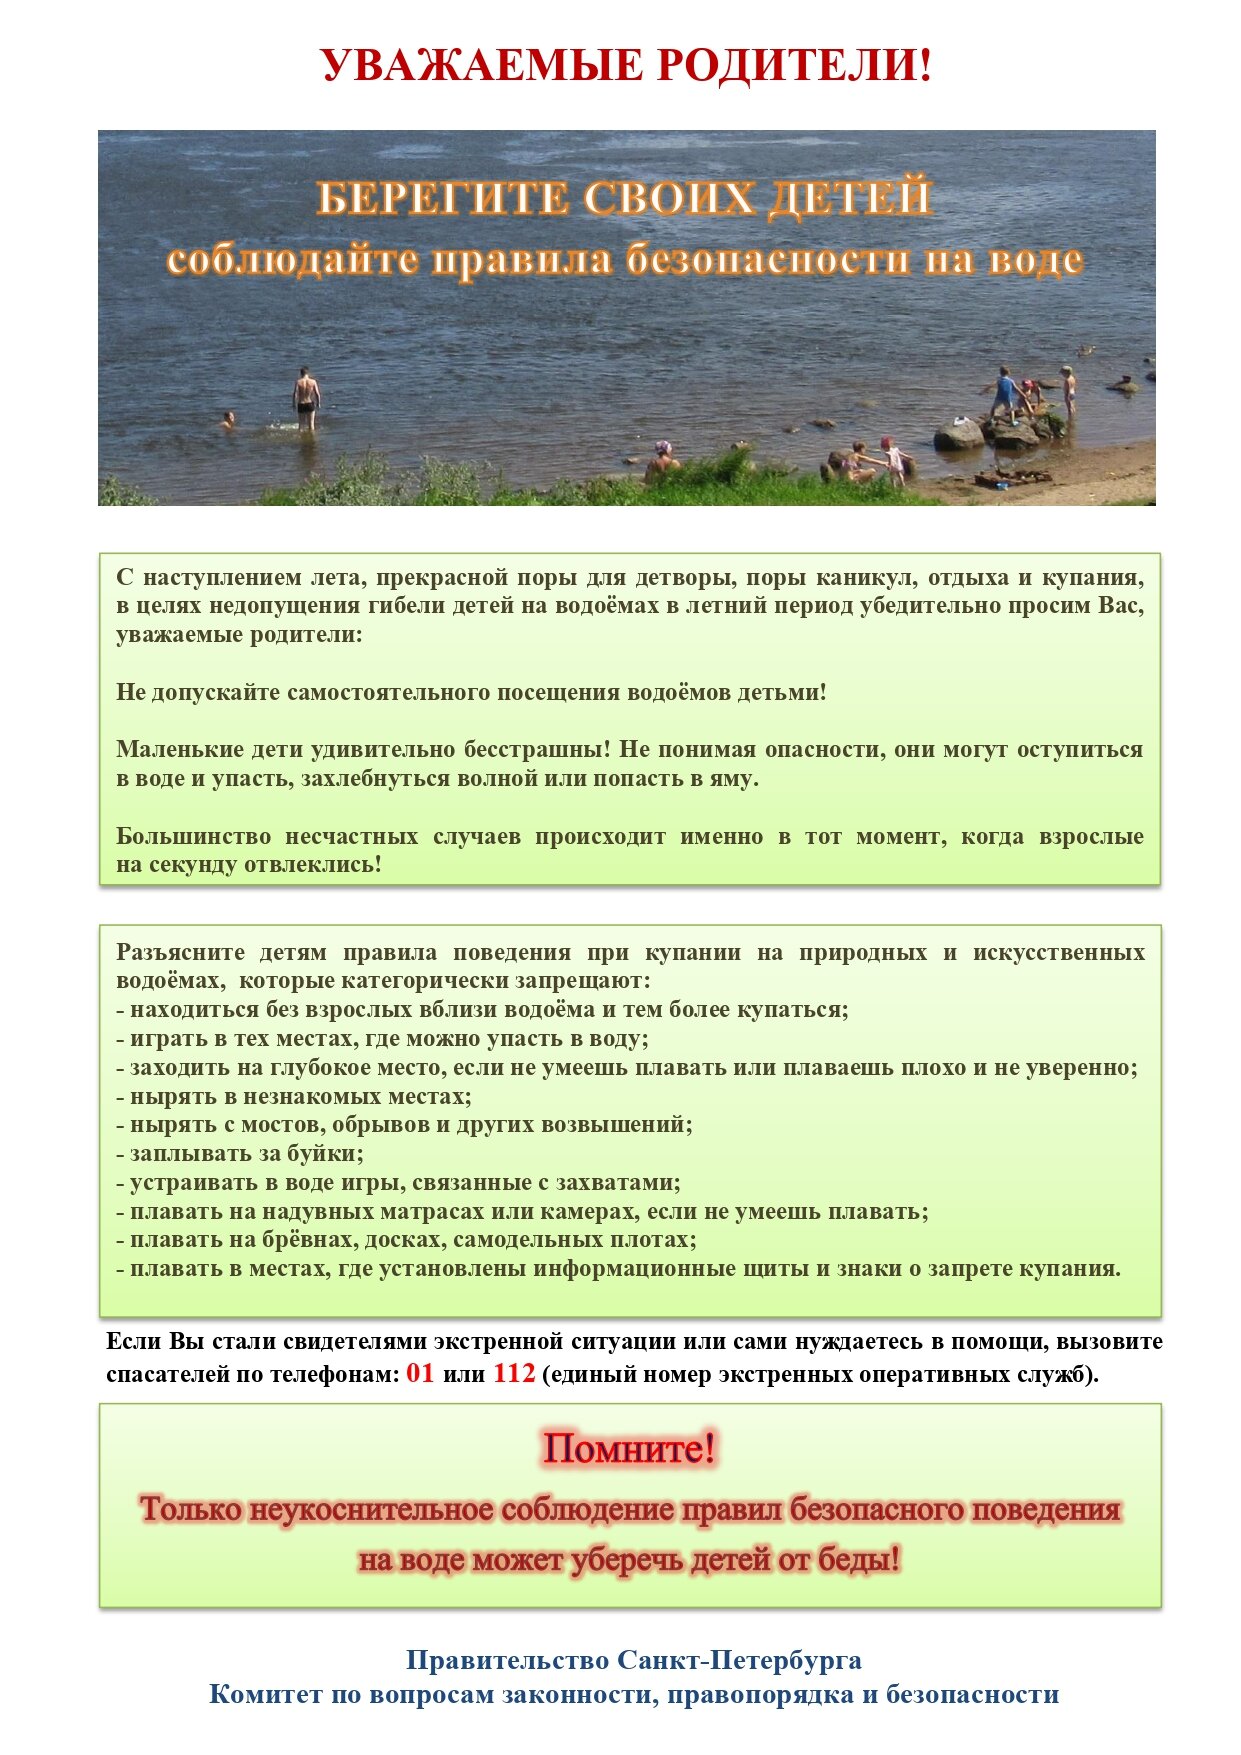 Памятка родителям по запрету купания в неотведённых местах 2021 1 page 0001 2